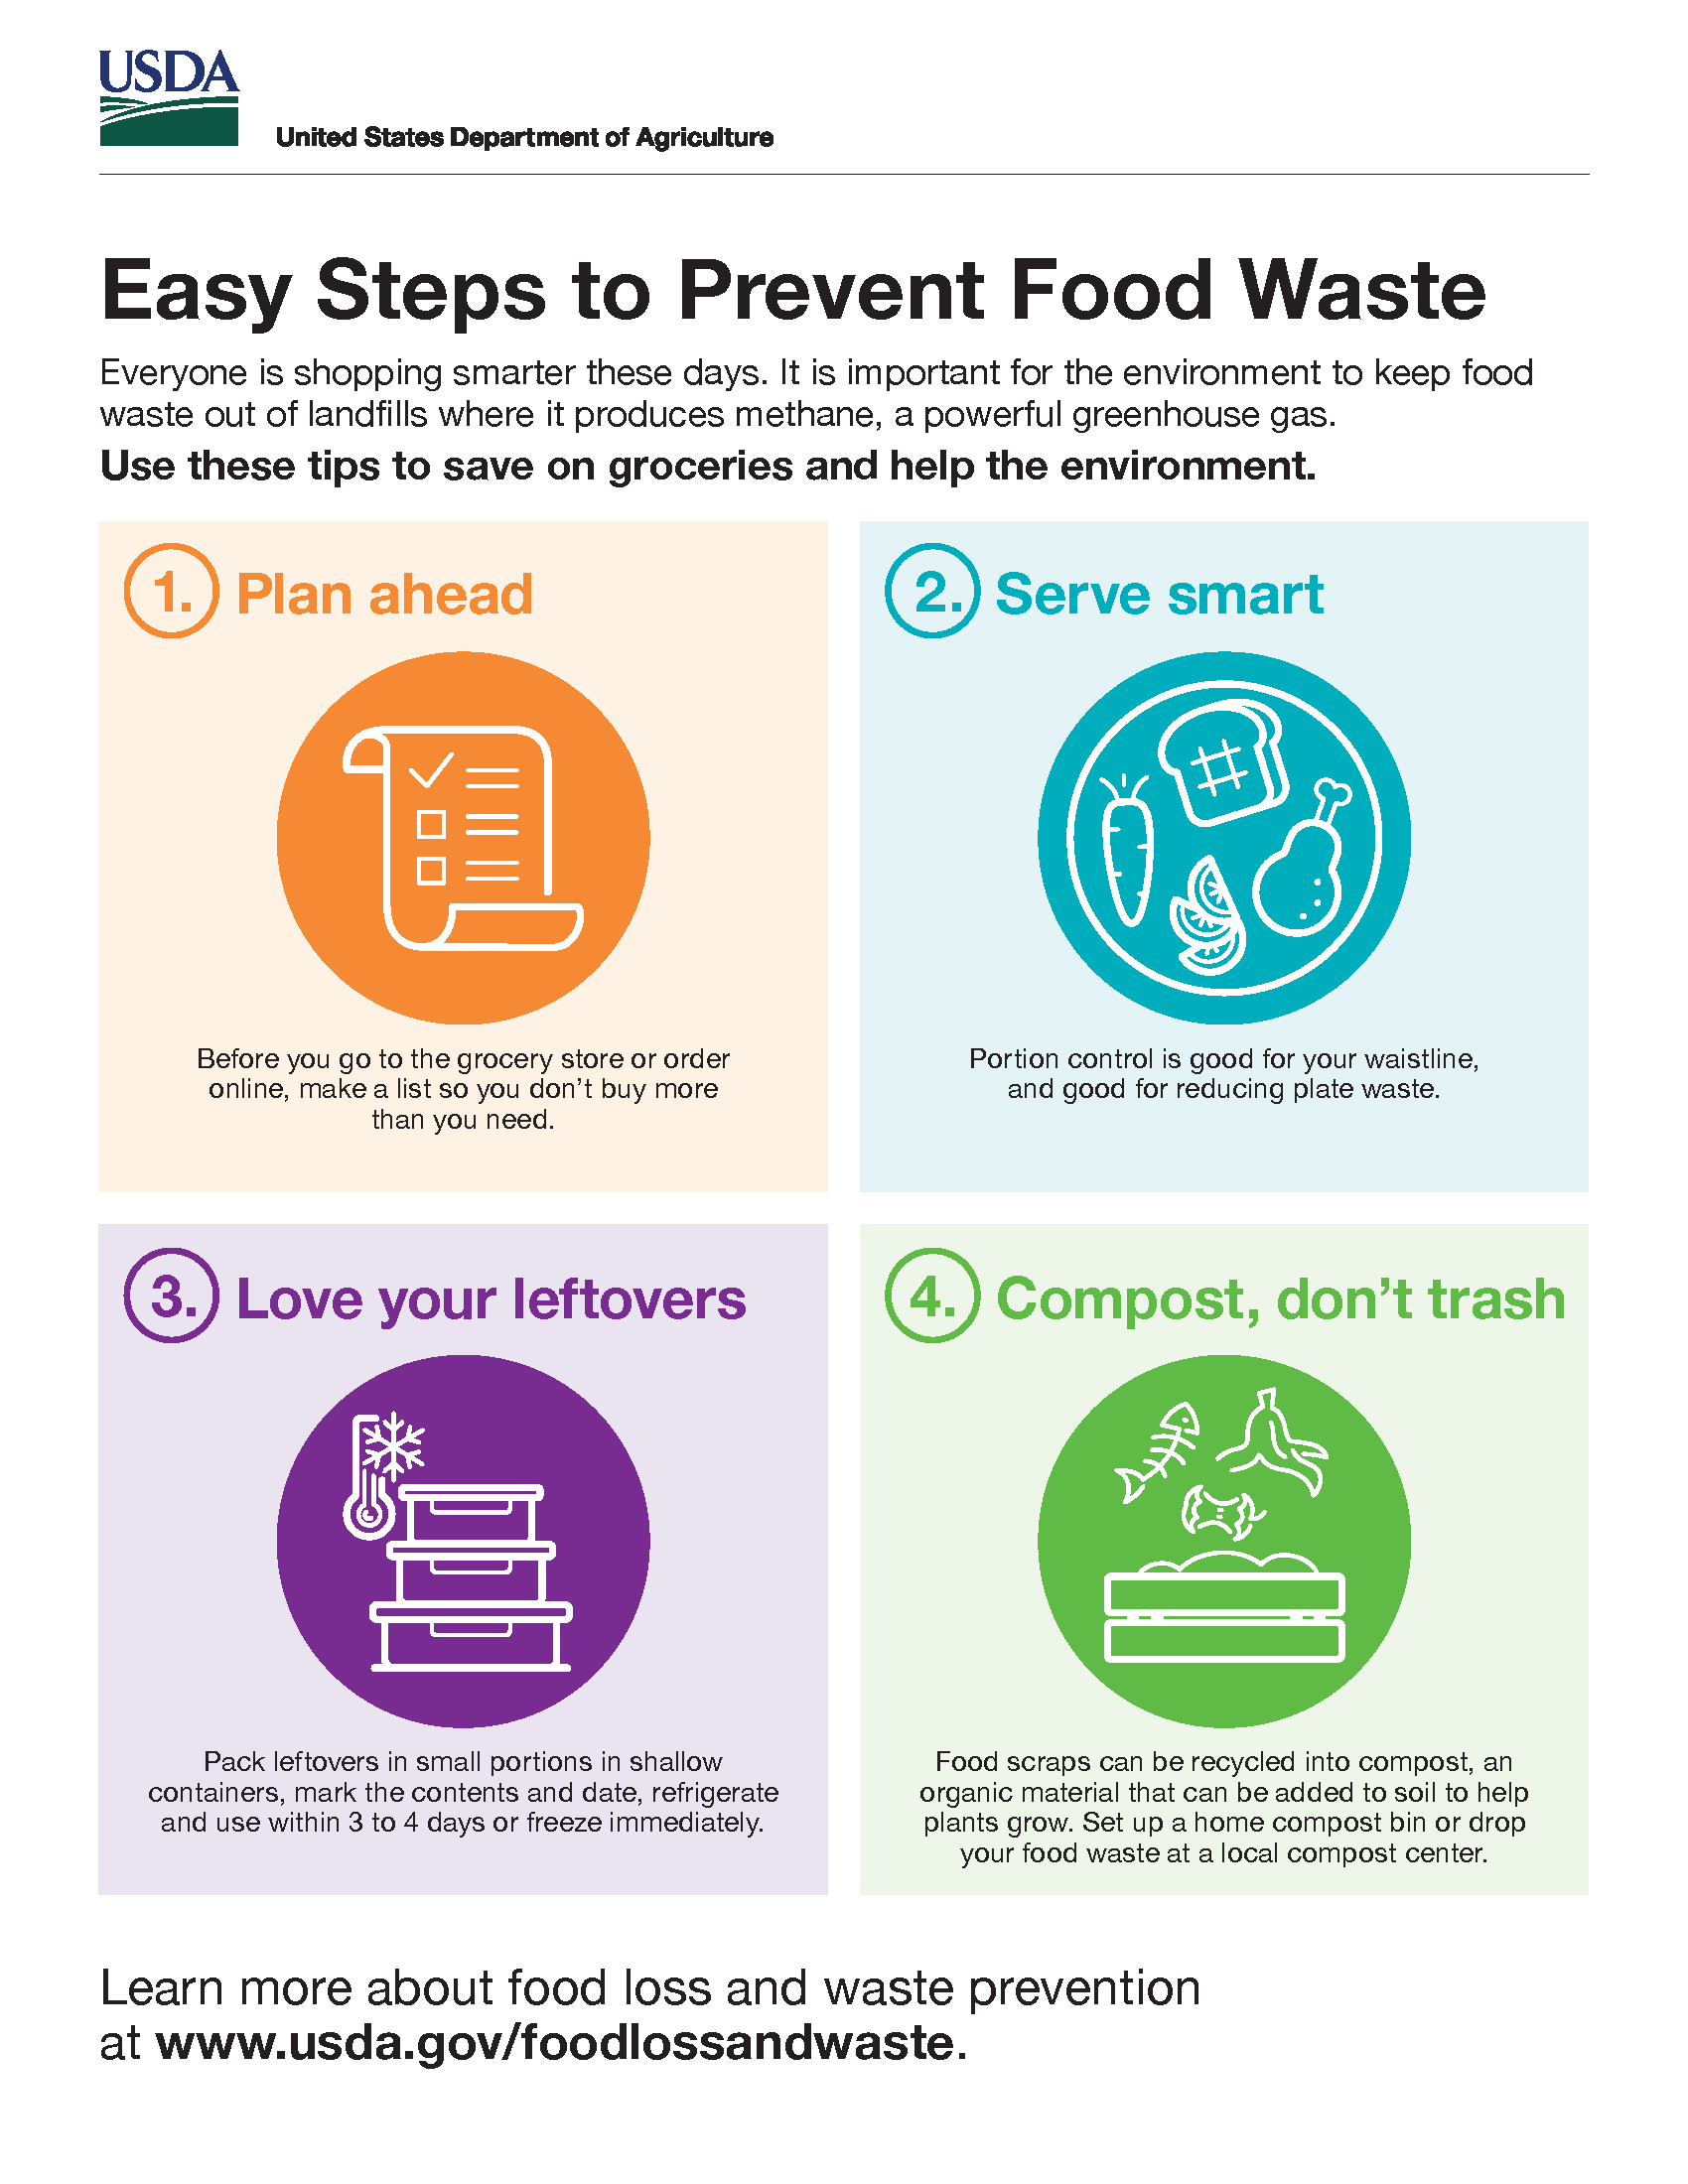 https://www.usda.gov/sites/default/files/usda-easy-steps-prevent-food-waste-infographic.png